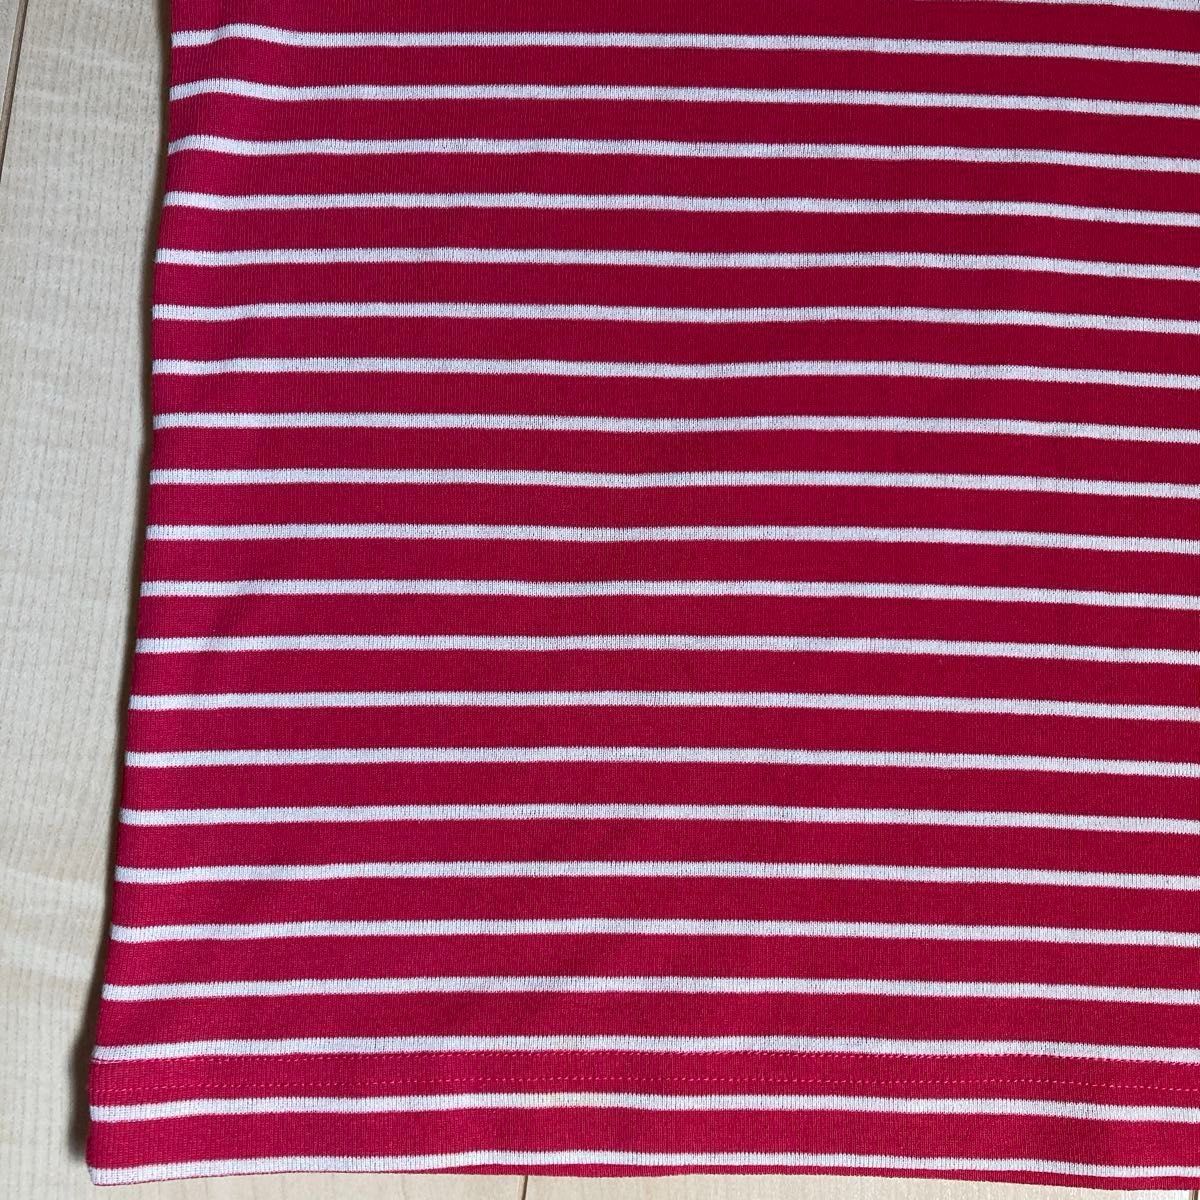 mont-bell モンベル キッズ ウイックロン ボーダーTシャツ 半袖Tシャツ サイズ140cm(小さめ)ピンク　1部分傷あり